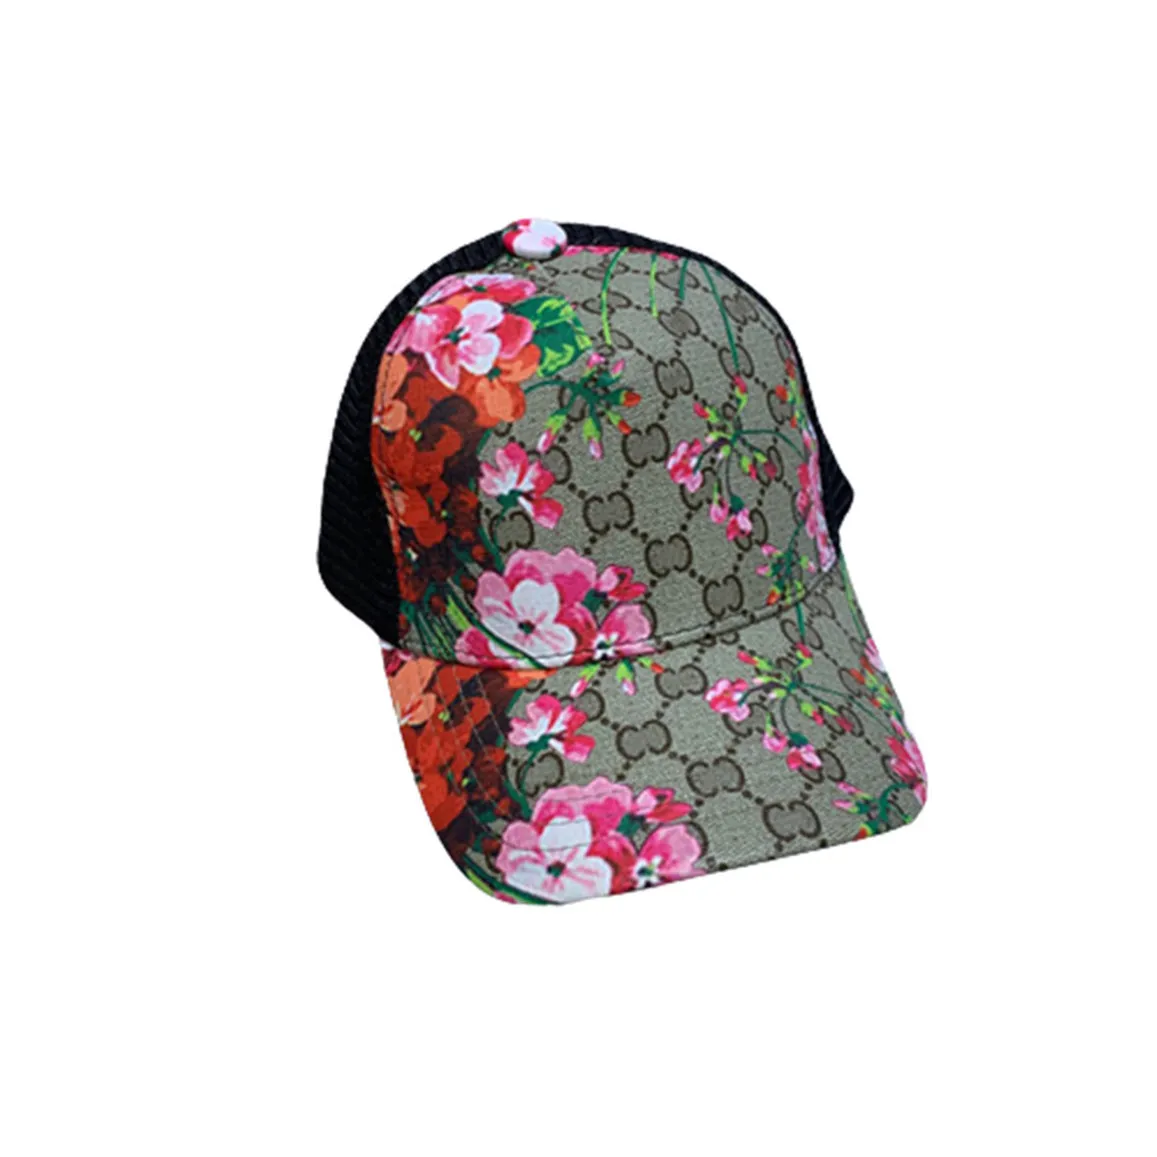 الكلاسيكية عالية الجودة في الشوارع قبعات أزياء بيسبول قبعات رجال النسائية الفاخرة المصممة الرياضية أغطية 23 ألوان كاب كاب كاسويت قابلة للتعديل قبعة Q-22